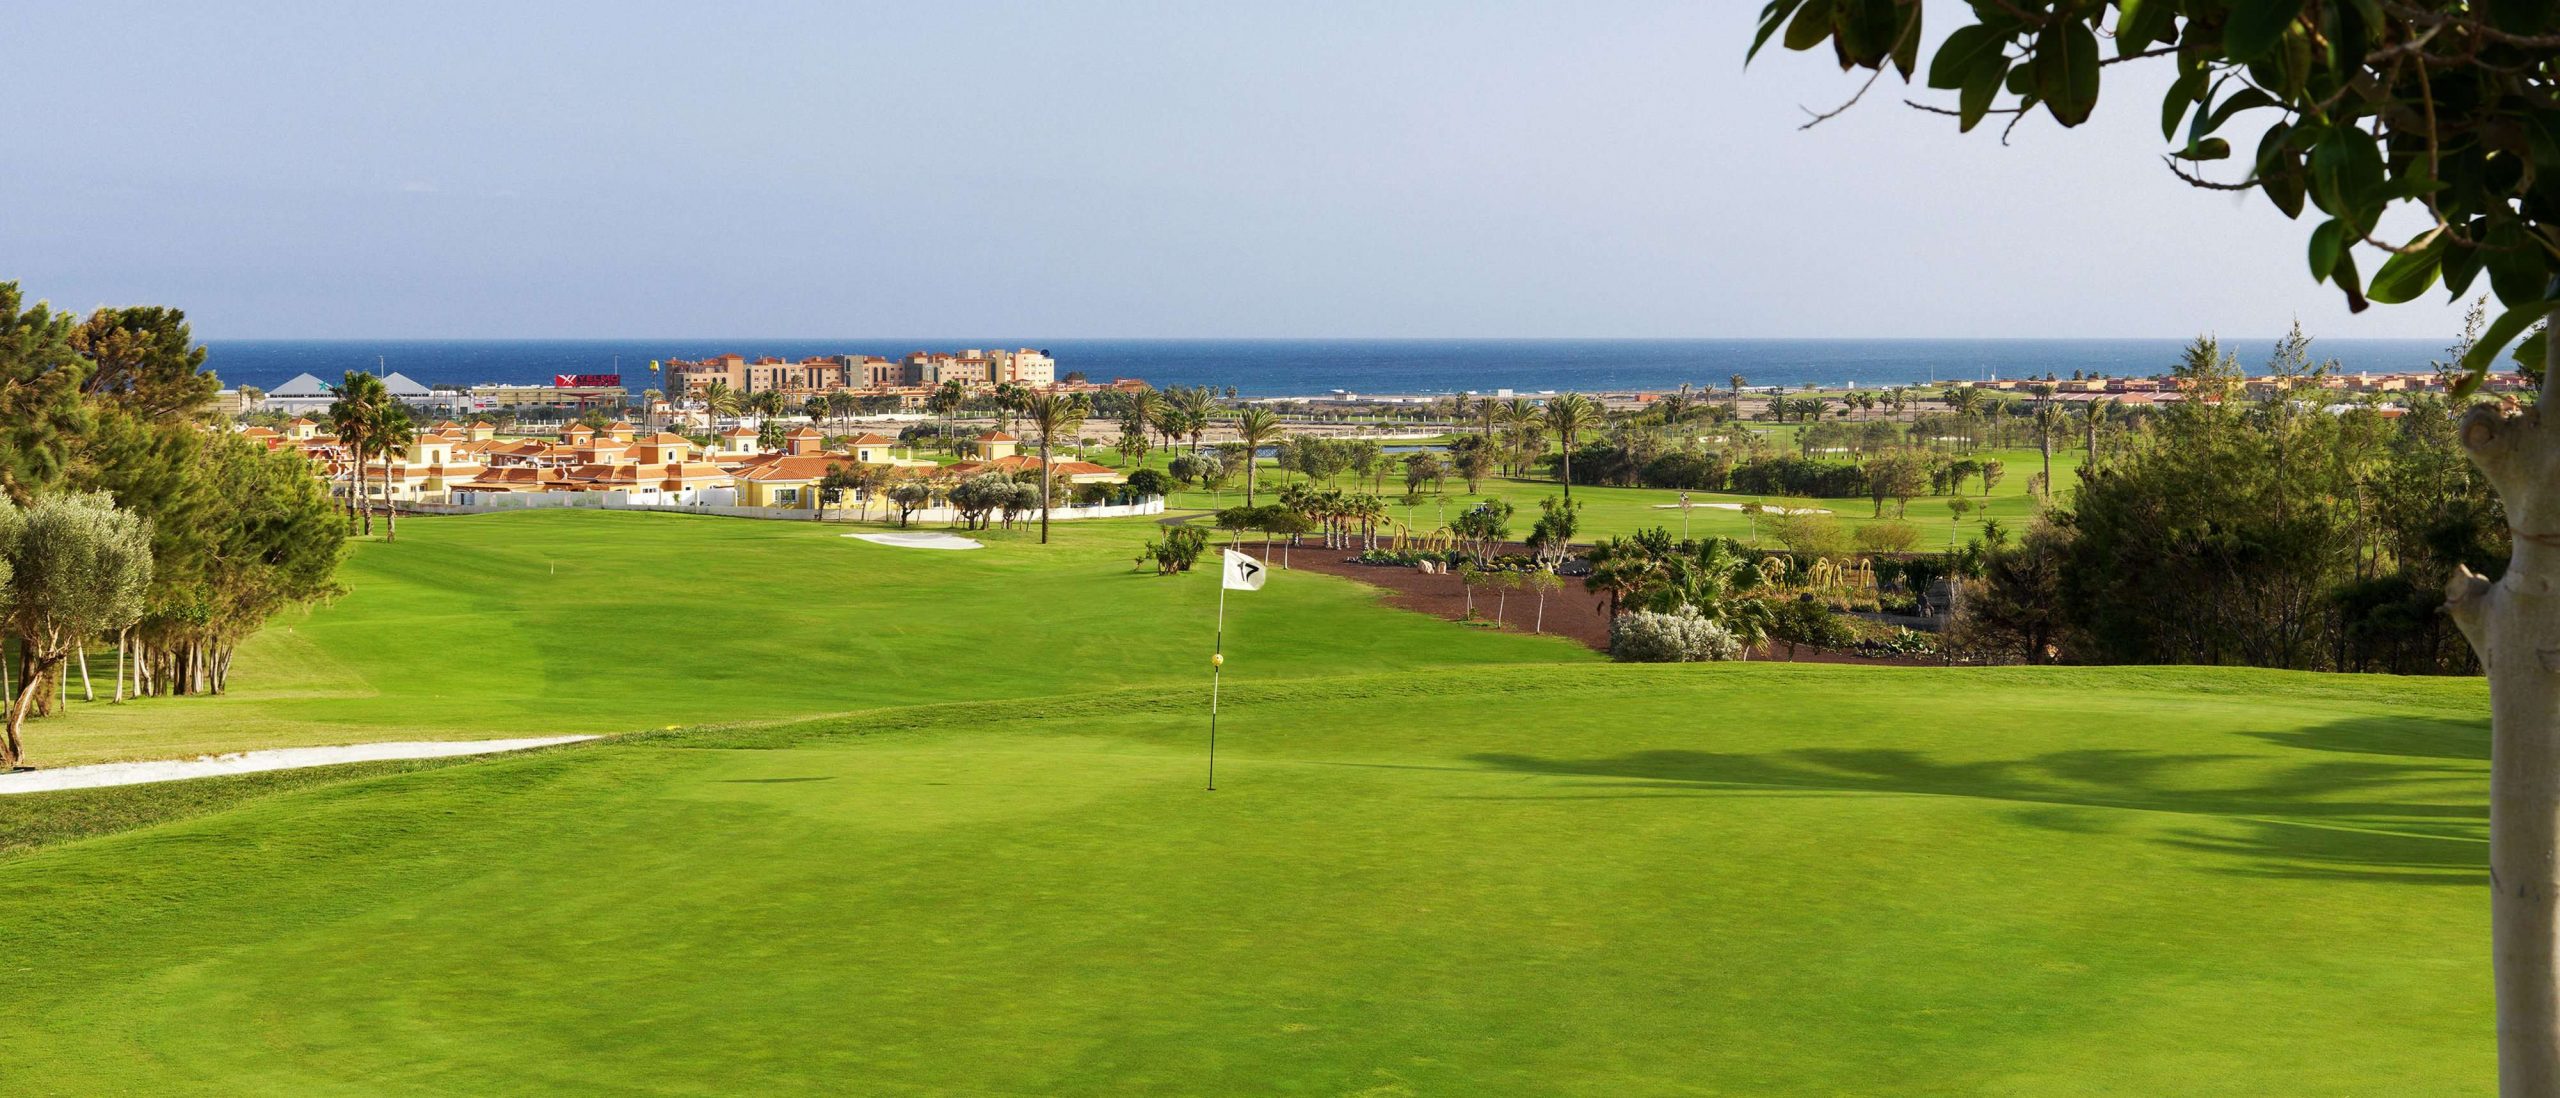 Svaghed Thrust nuttet Fuerteventura Golf Club Golf Course in Fuerteventura | Golf Escapes